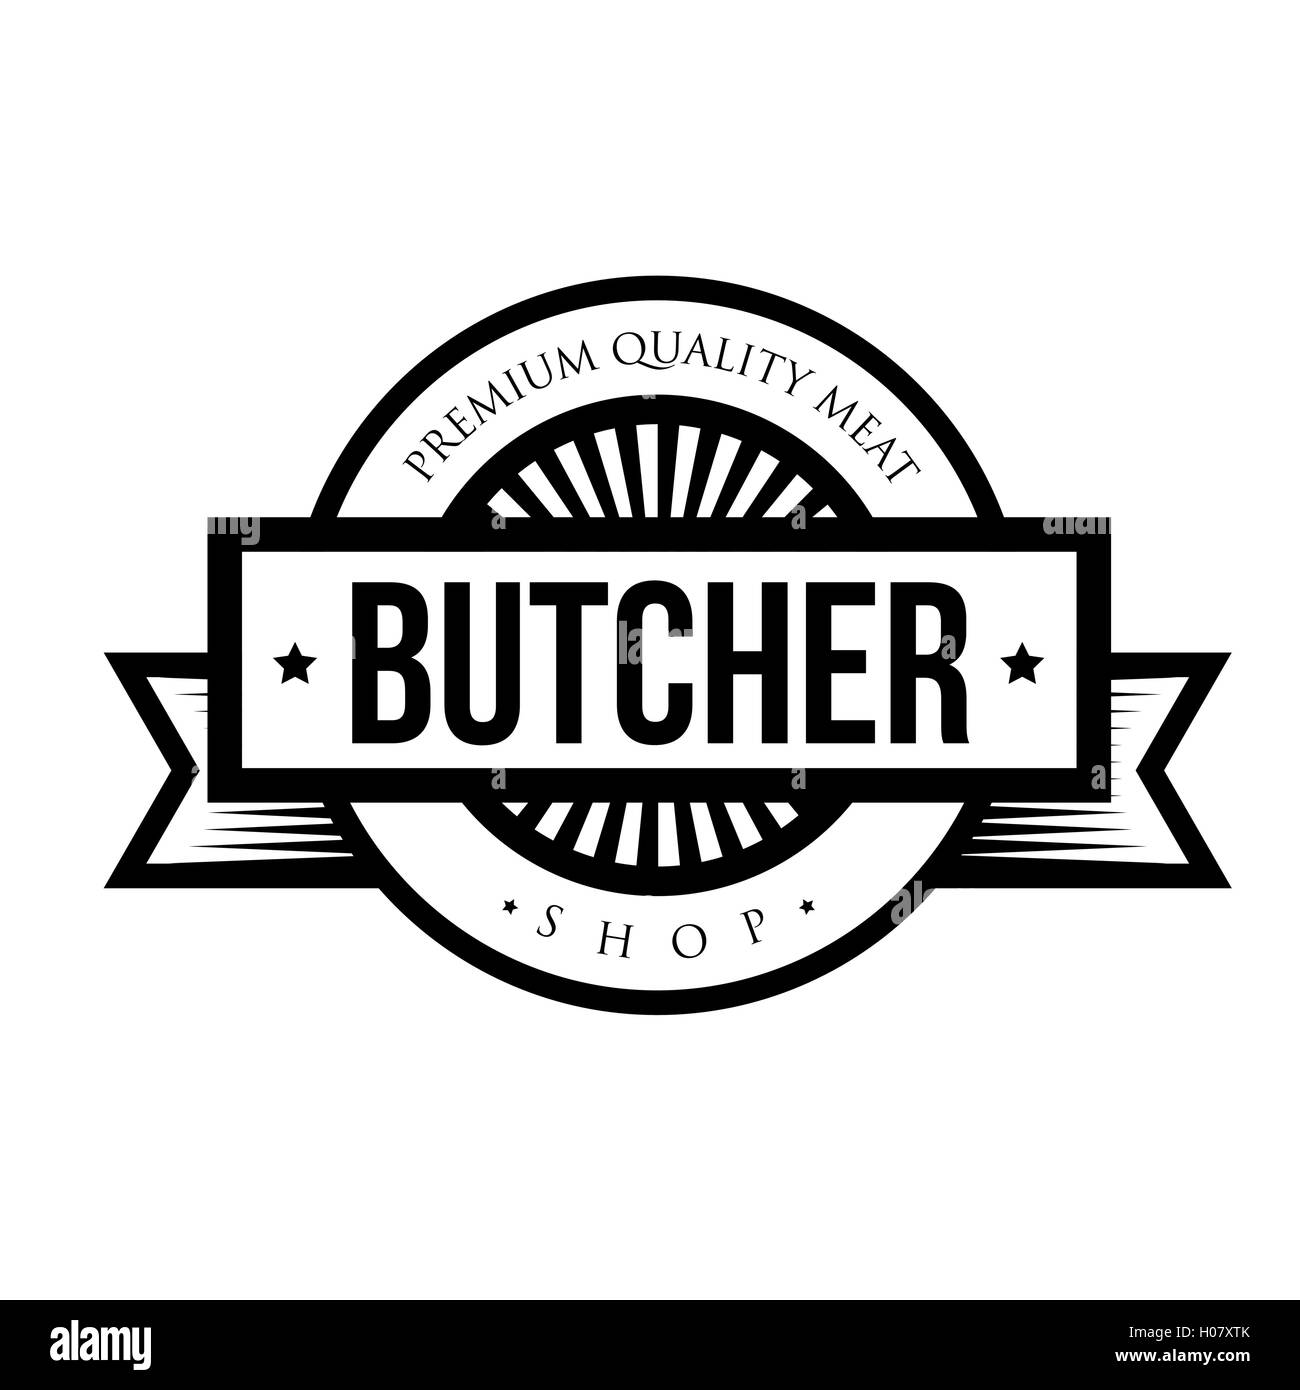 Butcher shop logo vintage vector Stock Vector